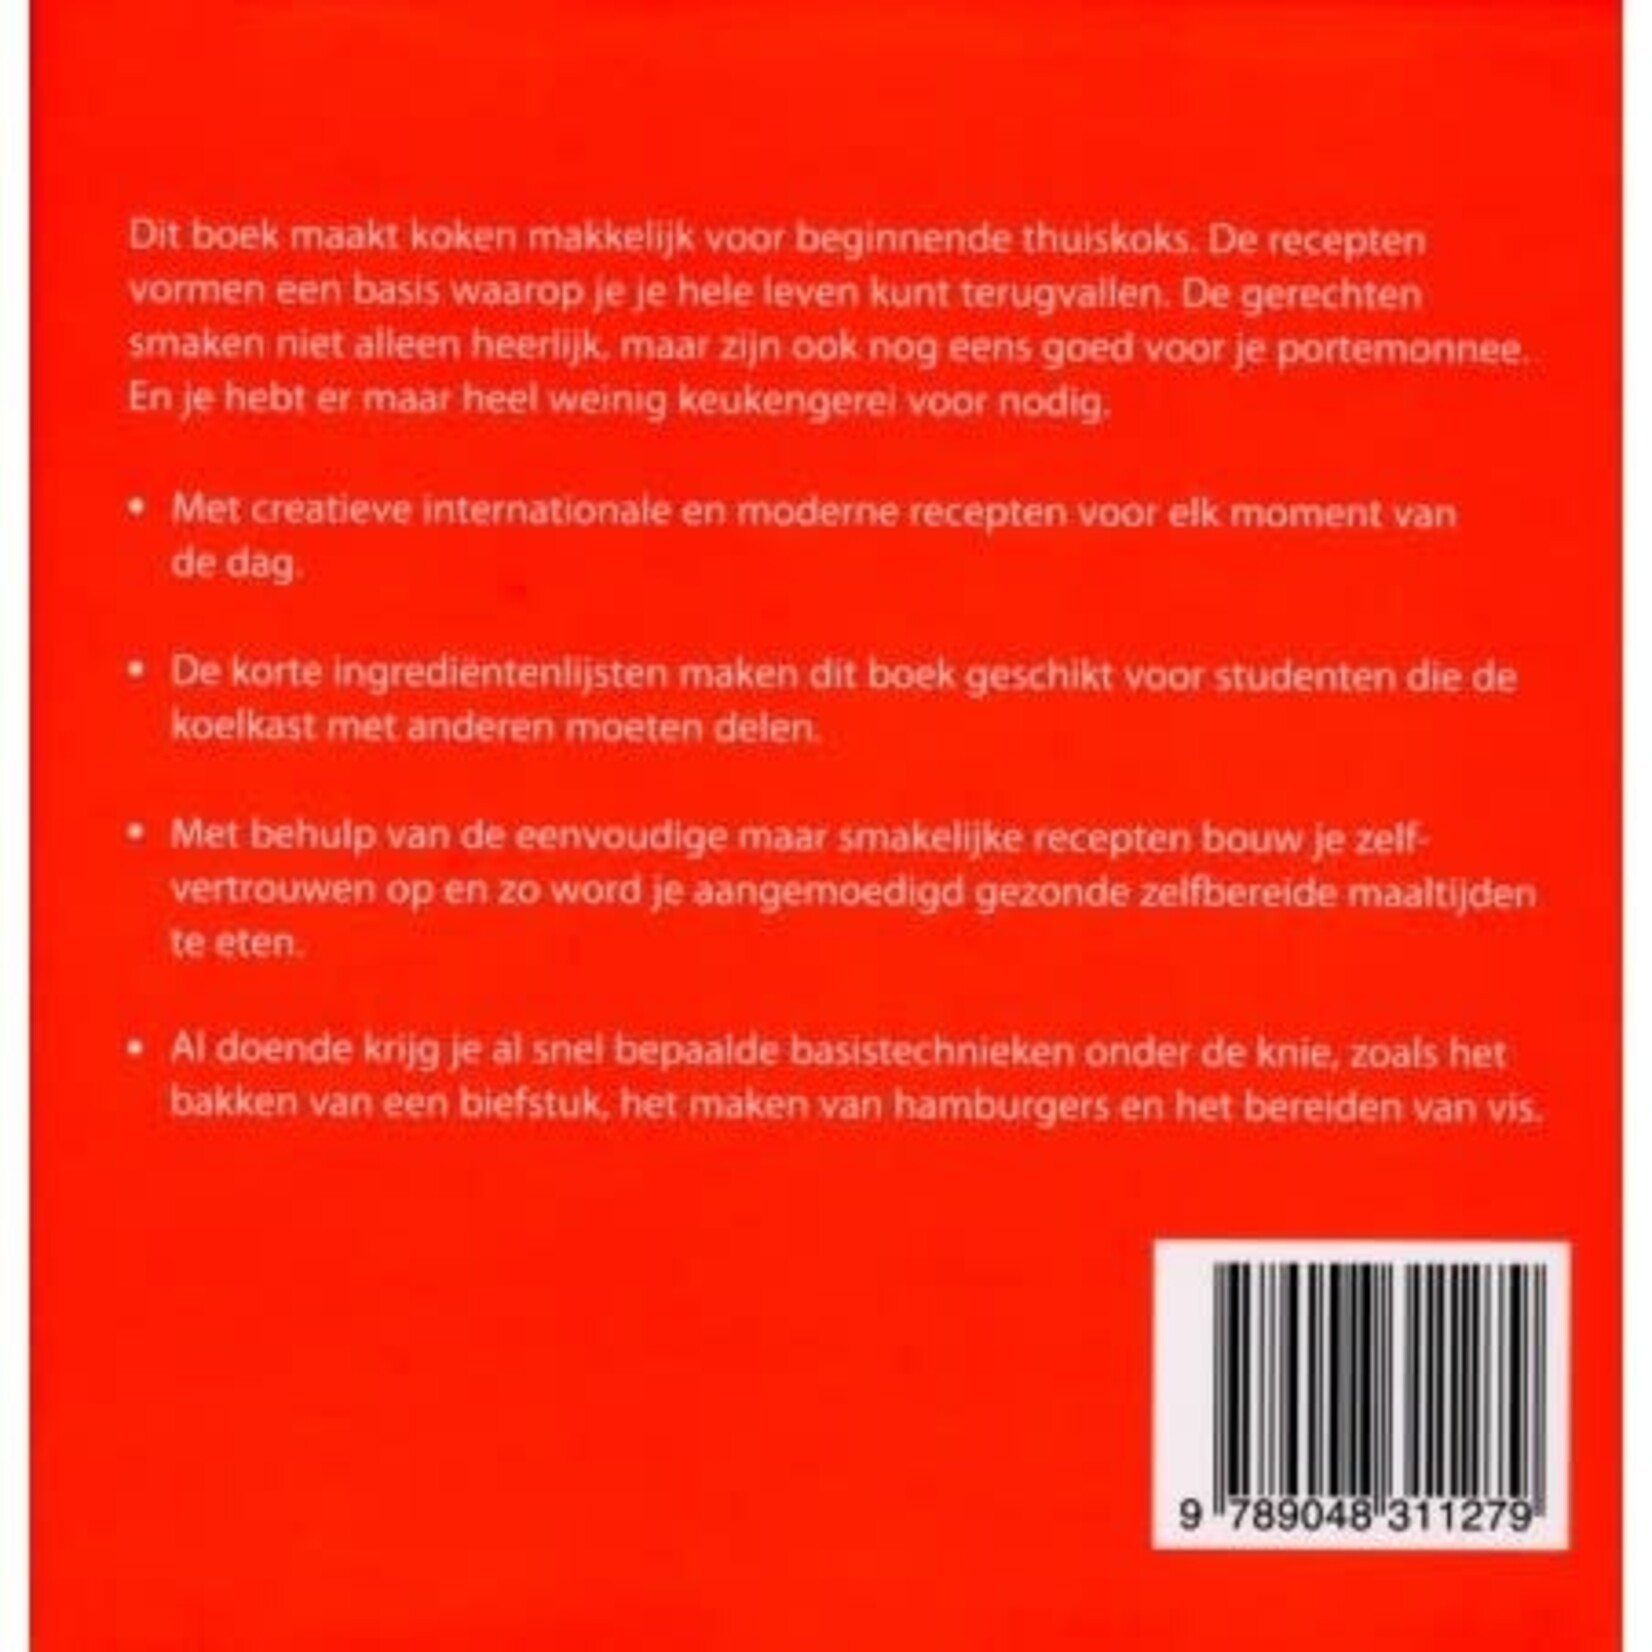 Diverse Merken 500 Studenten maaltijden Kookboek ISBN 9789048311279